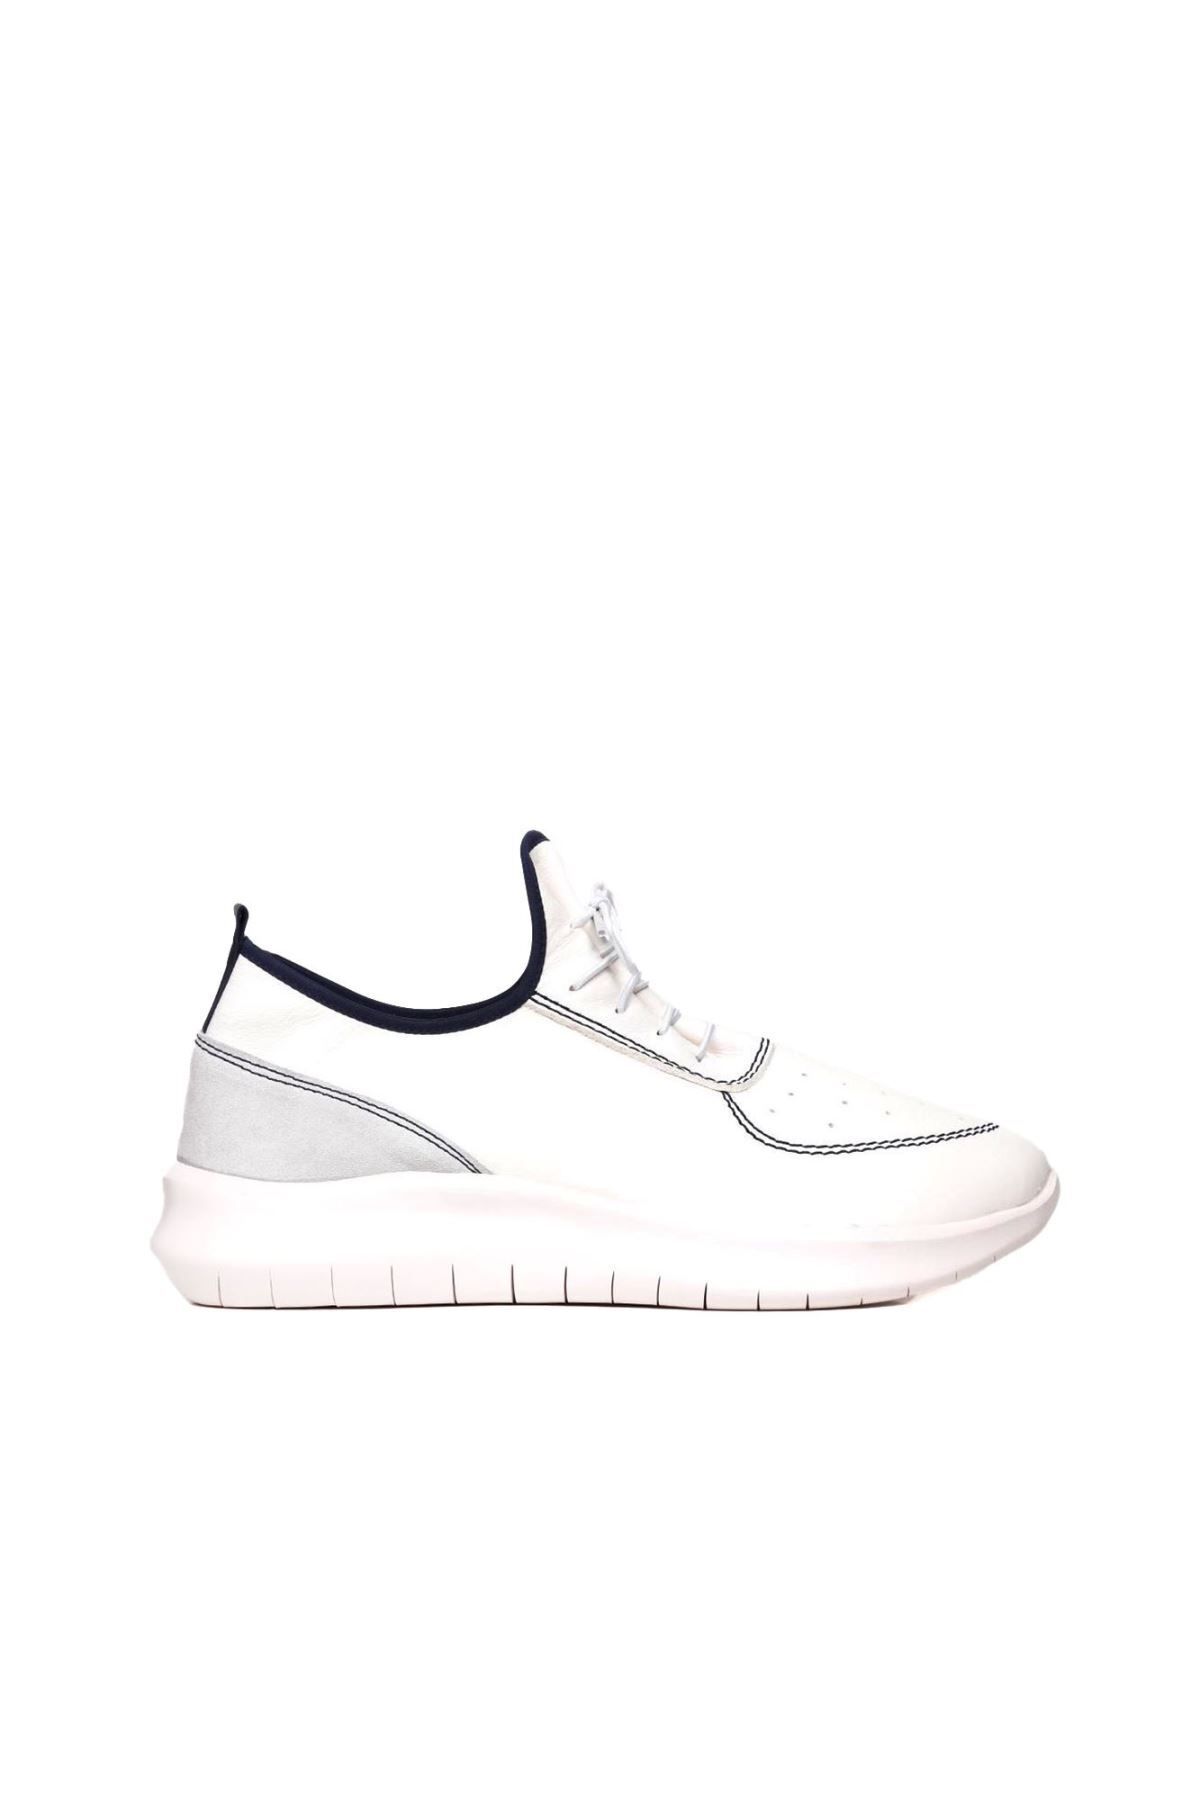 BUENO Shoes Beyaz Lacivert Deri Erkek Spor Ayakkabı